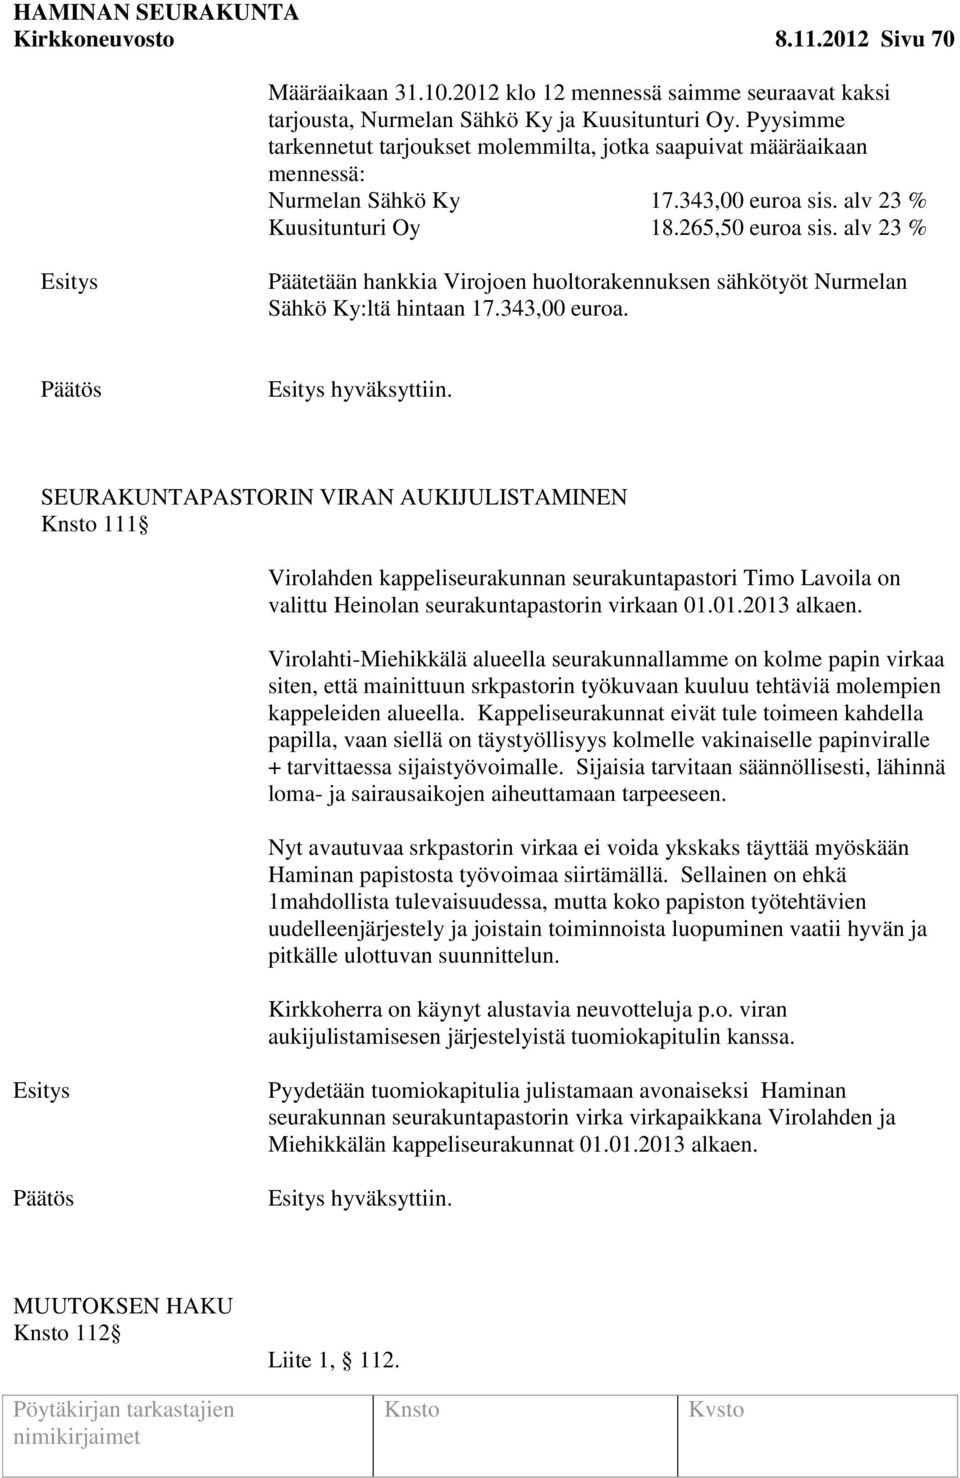 alv 23 % Päätetään hankkia Virojoen huoltorakennuksen sähkötyöt Nurmelan Sähkö Ky:ltä hintaan 17.343,00 euroa. hyväksyttiin.